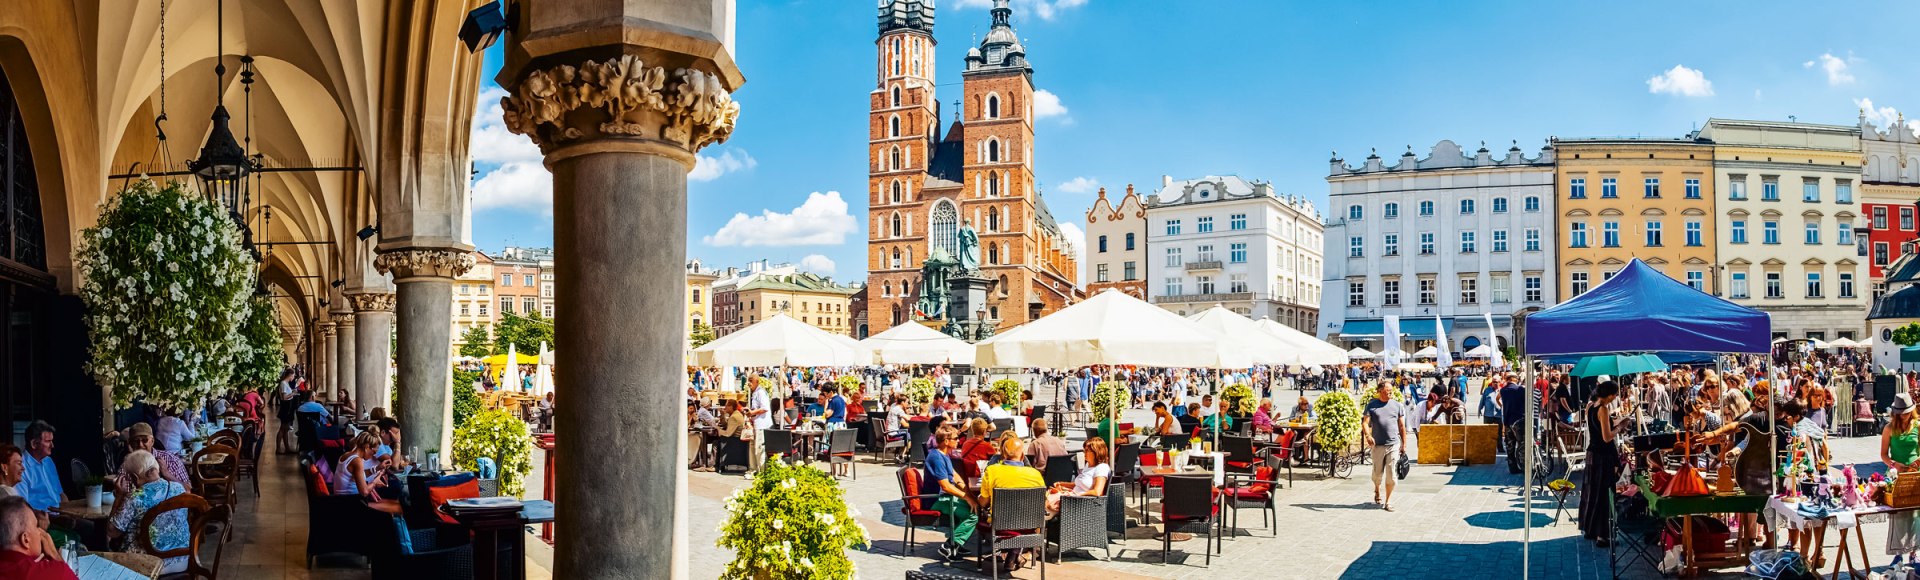 Krakauer Altstadtmarkt mit Blick auf die Marienkirche, Polen, © istockphoto.com©Martin Dimitrov